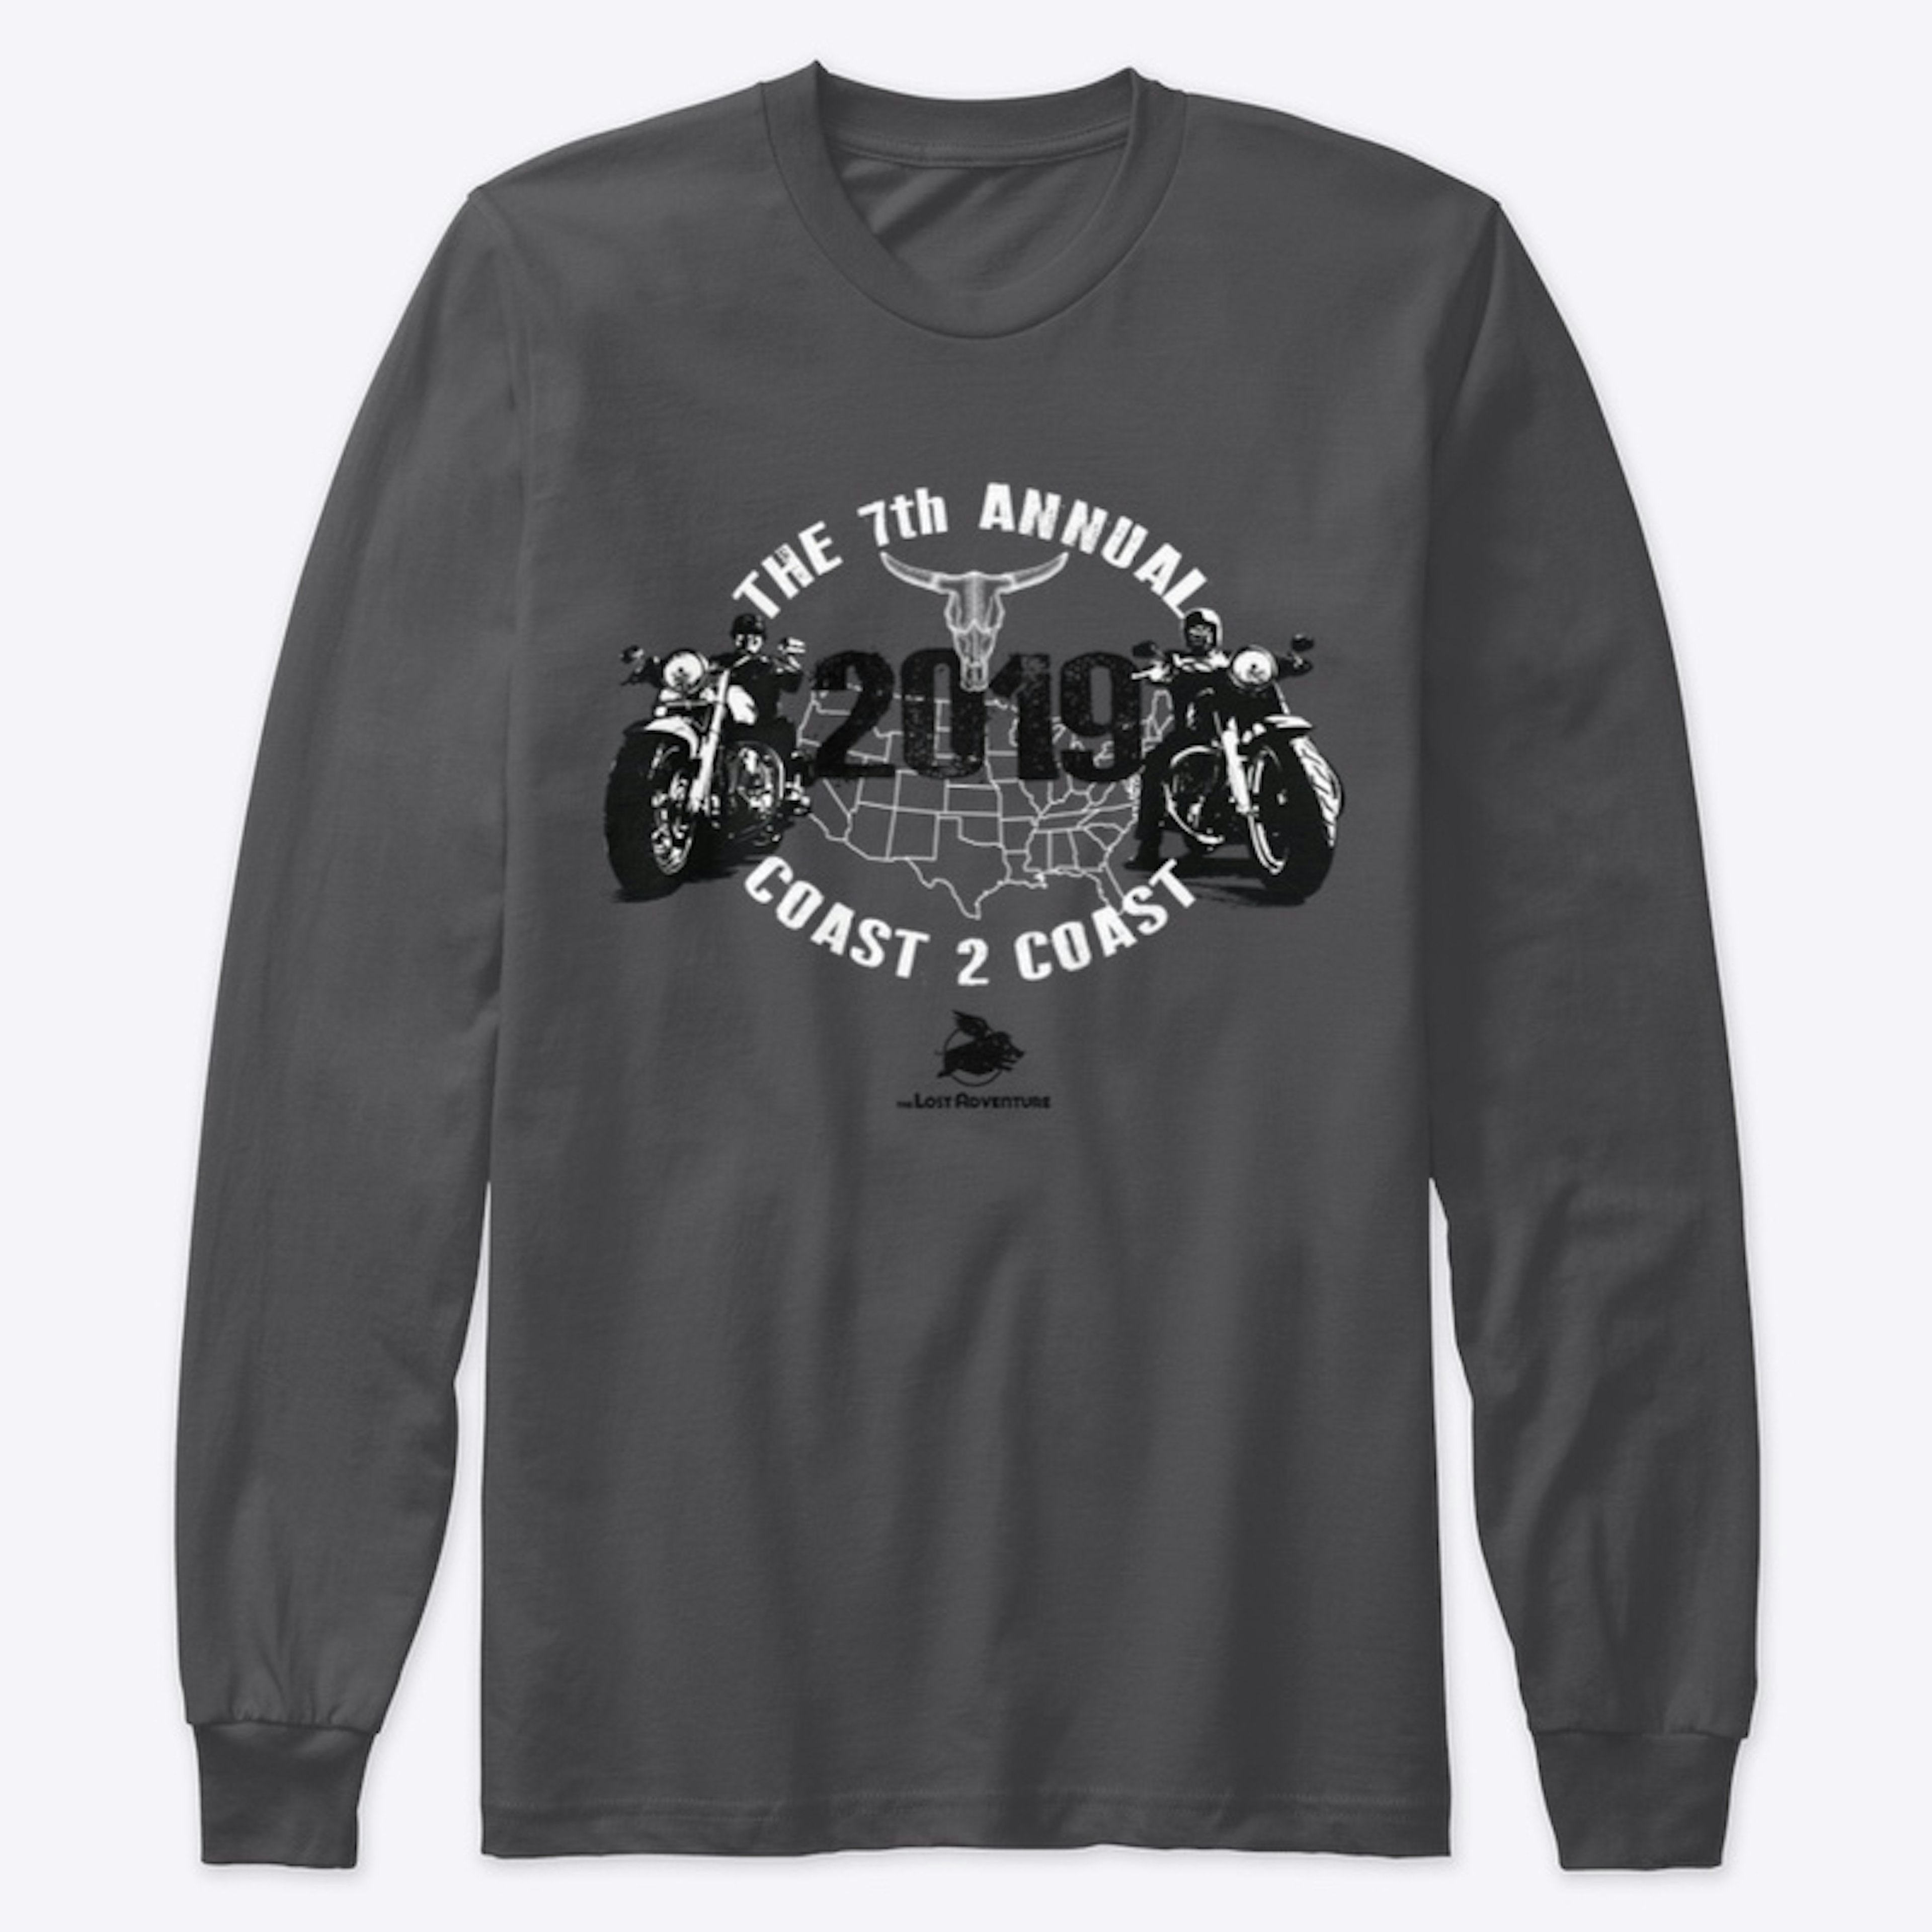 2019 Coast to Coast Run Shirt